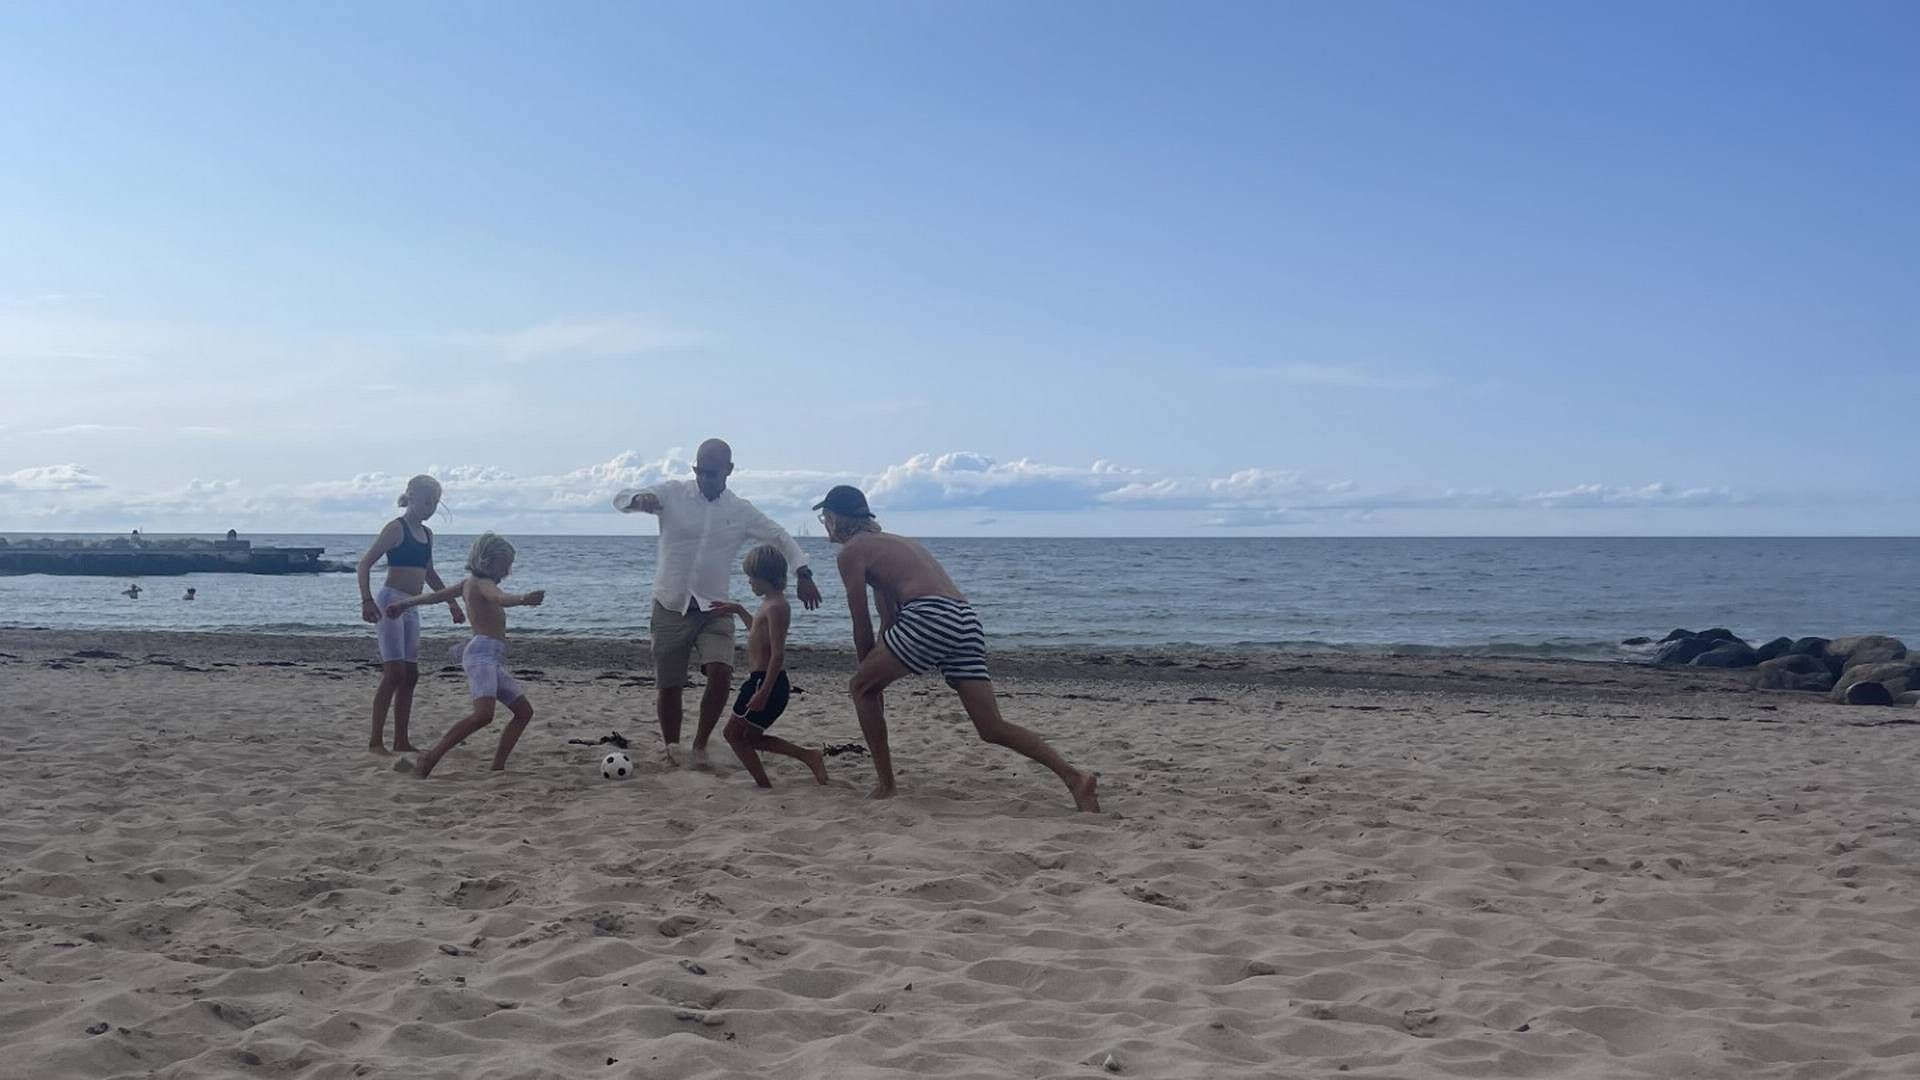 «DEJLIG Å VÆRE NORSK»: Her er Tom André Svenning-Gultvedt i ferd med å sparke en fotball, sammen med sine to døtre til venstre. Til høyre for Svenning-Gultvedt er sønnen hans og en venn. Bildet er tatt på stranden i Tisvildeleje (Helenekilde) i Danmark. | Foto: Privat